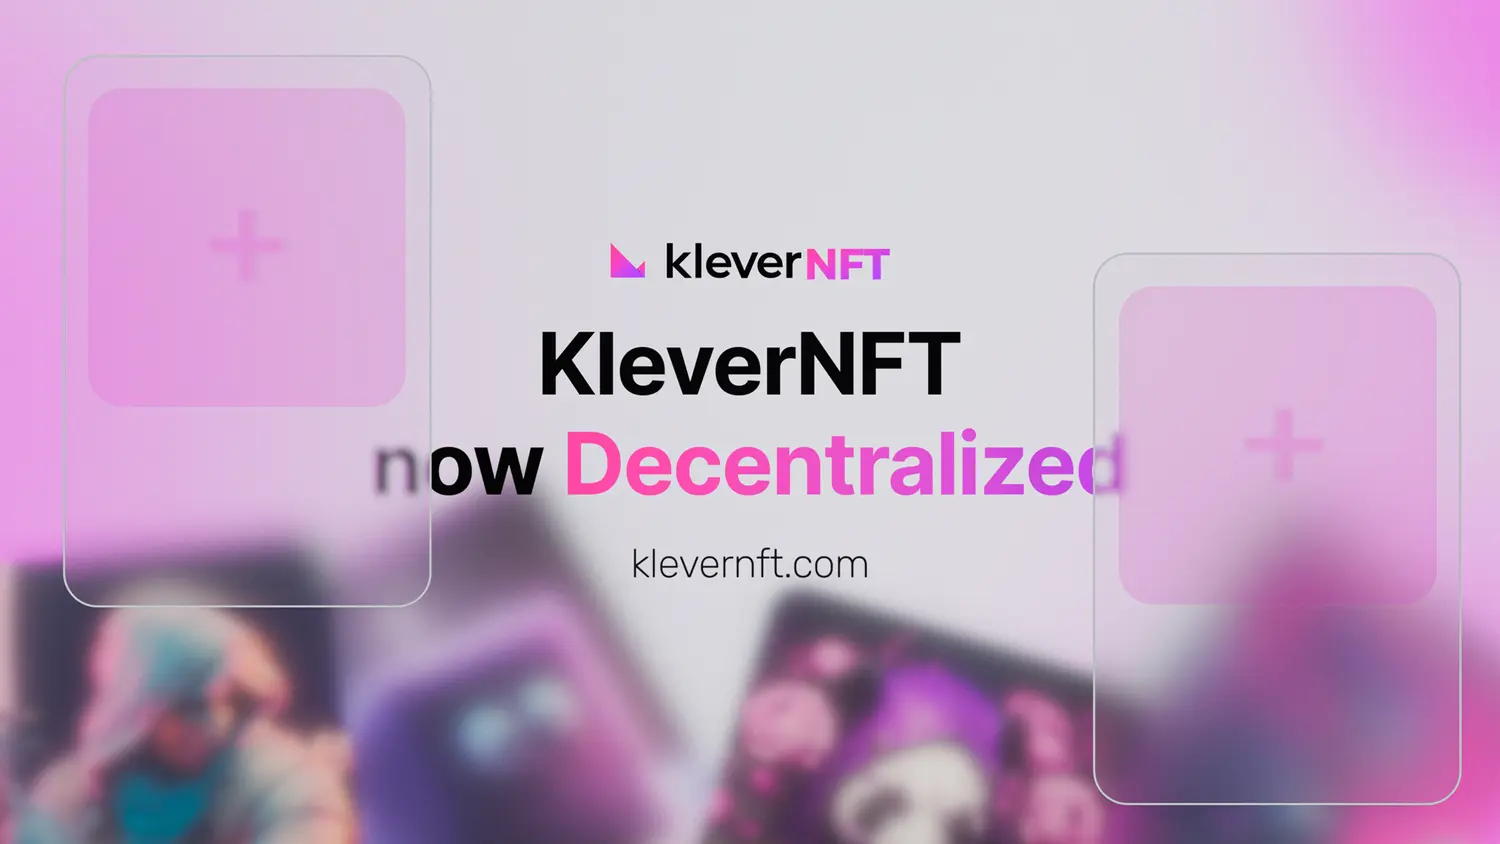 kleverNFT Decentralized